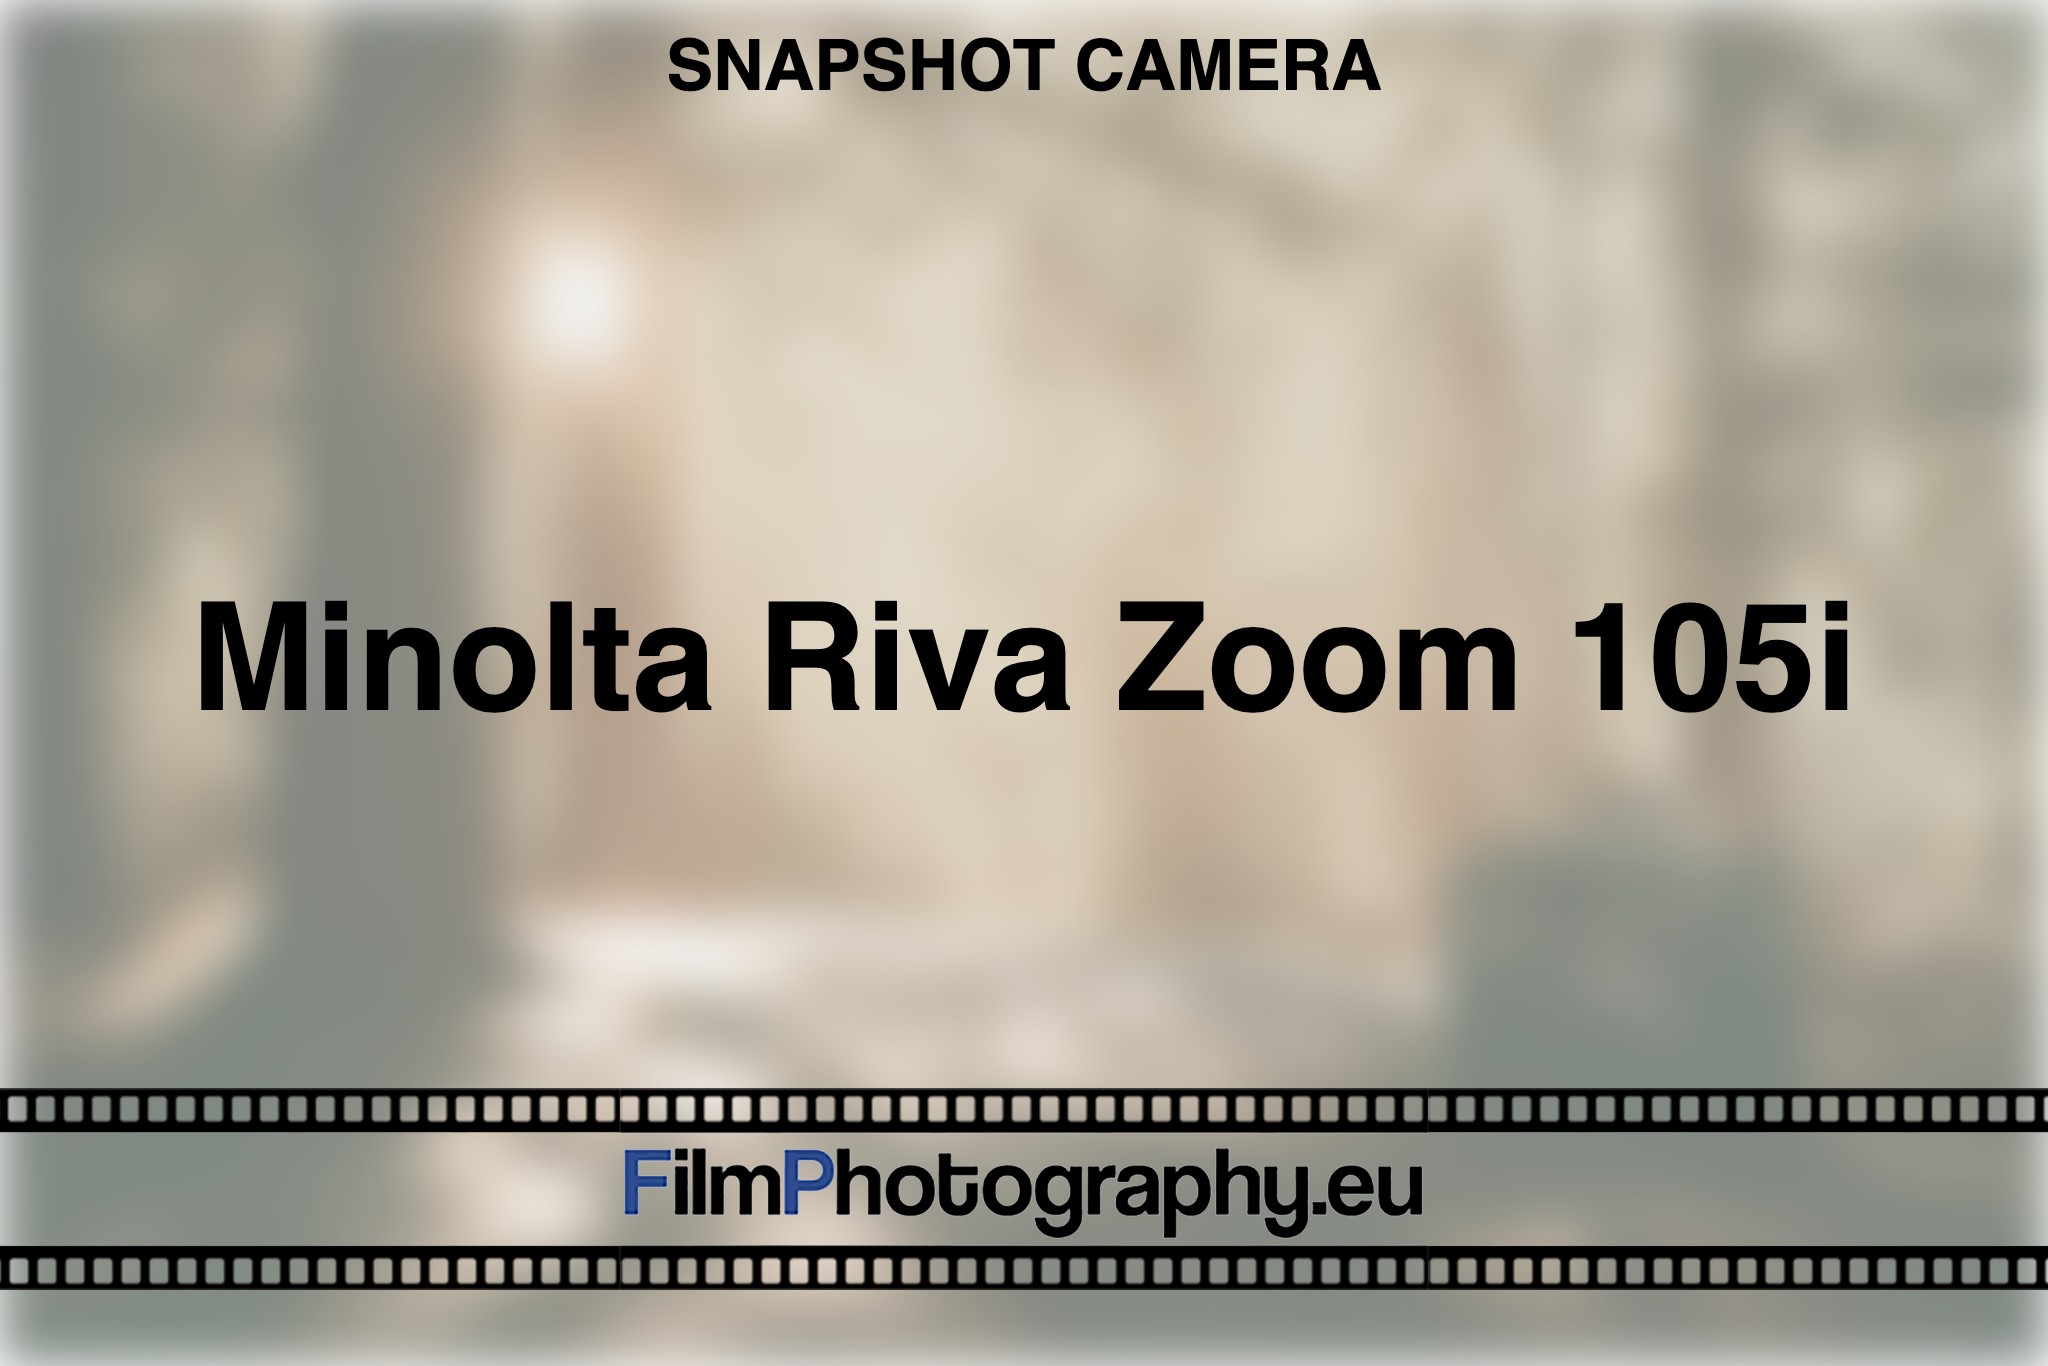 minolta-riva-zoom-105i-snapshot-camera-bnv